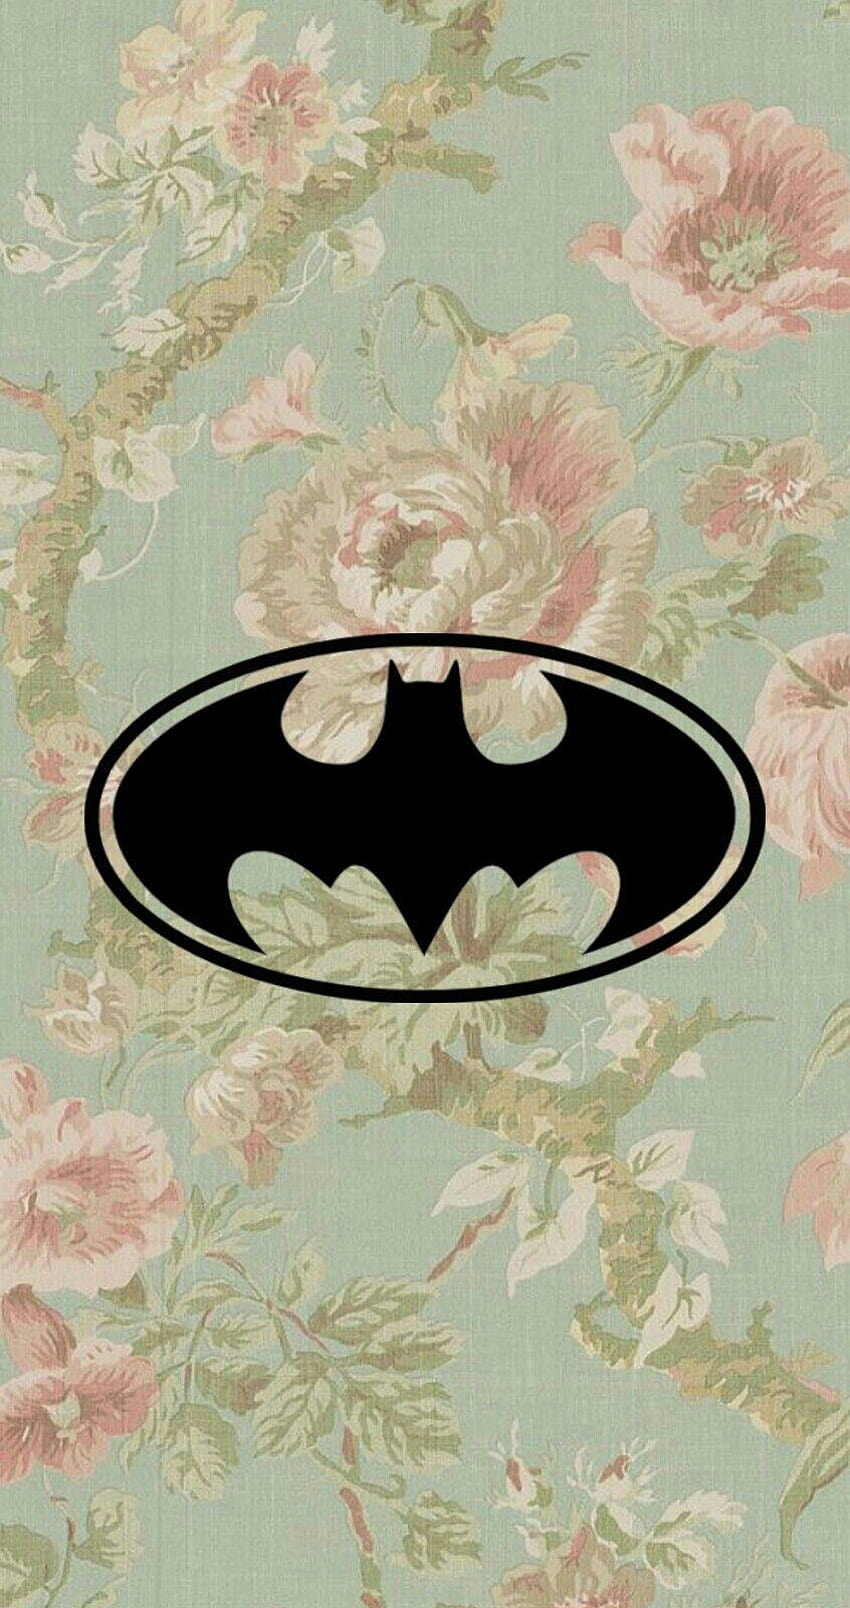 I'm Batman! Heuheu, um que eu editei com a logo do Batman, im batman HD phone wallpaper